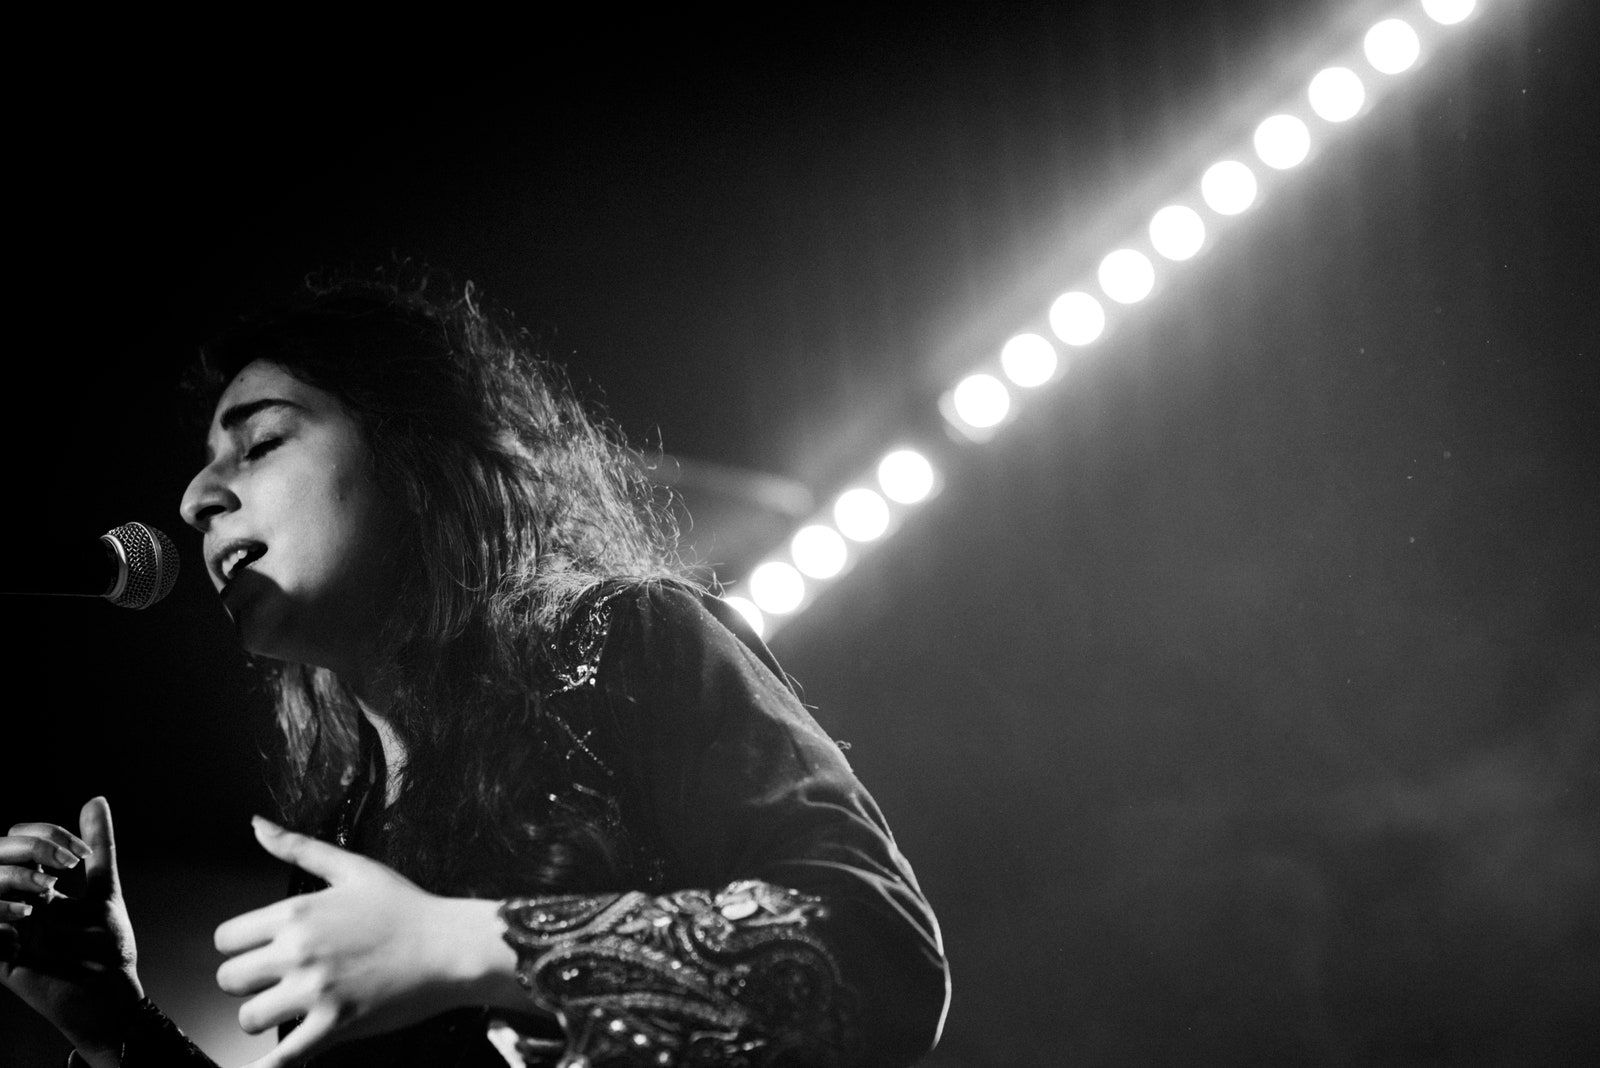 Foto em preto e branco da cantora Arooj Aftab em uma apresentação. Ela está no canto esquerdo da imagem, de perfil, cantando com um microfone, que está preso em pedestal, bem próximo a sua boca. Arooj é uma mulher de traços árabes e cabelos lisos compridos. Ela usa uma roupa de mangas compridas, com detalhes nas mangas. 